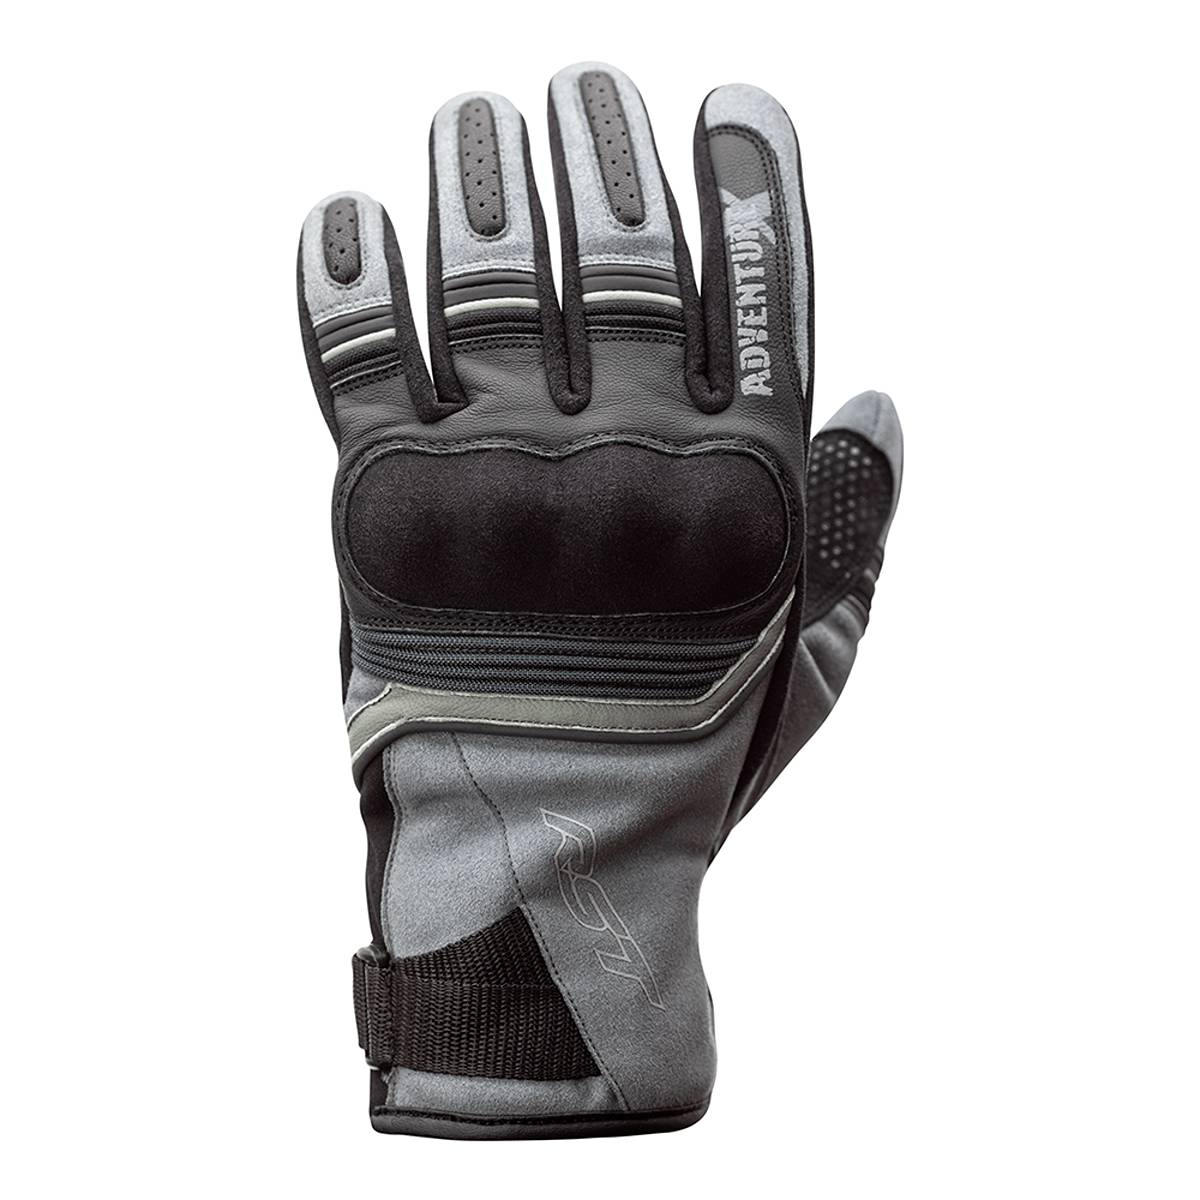 Image of RST Adventure-X Gloves Grey Black Size 8 EN